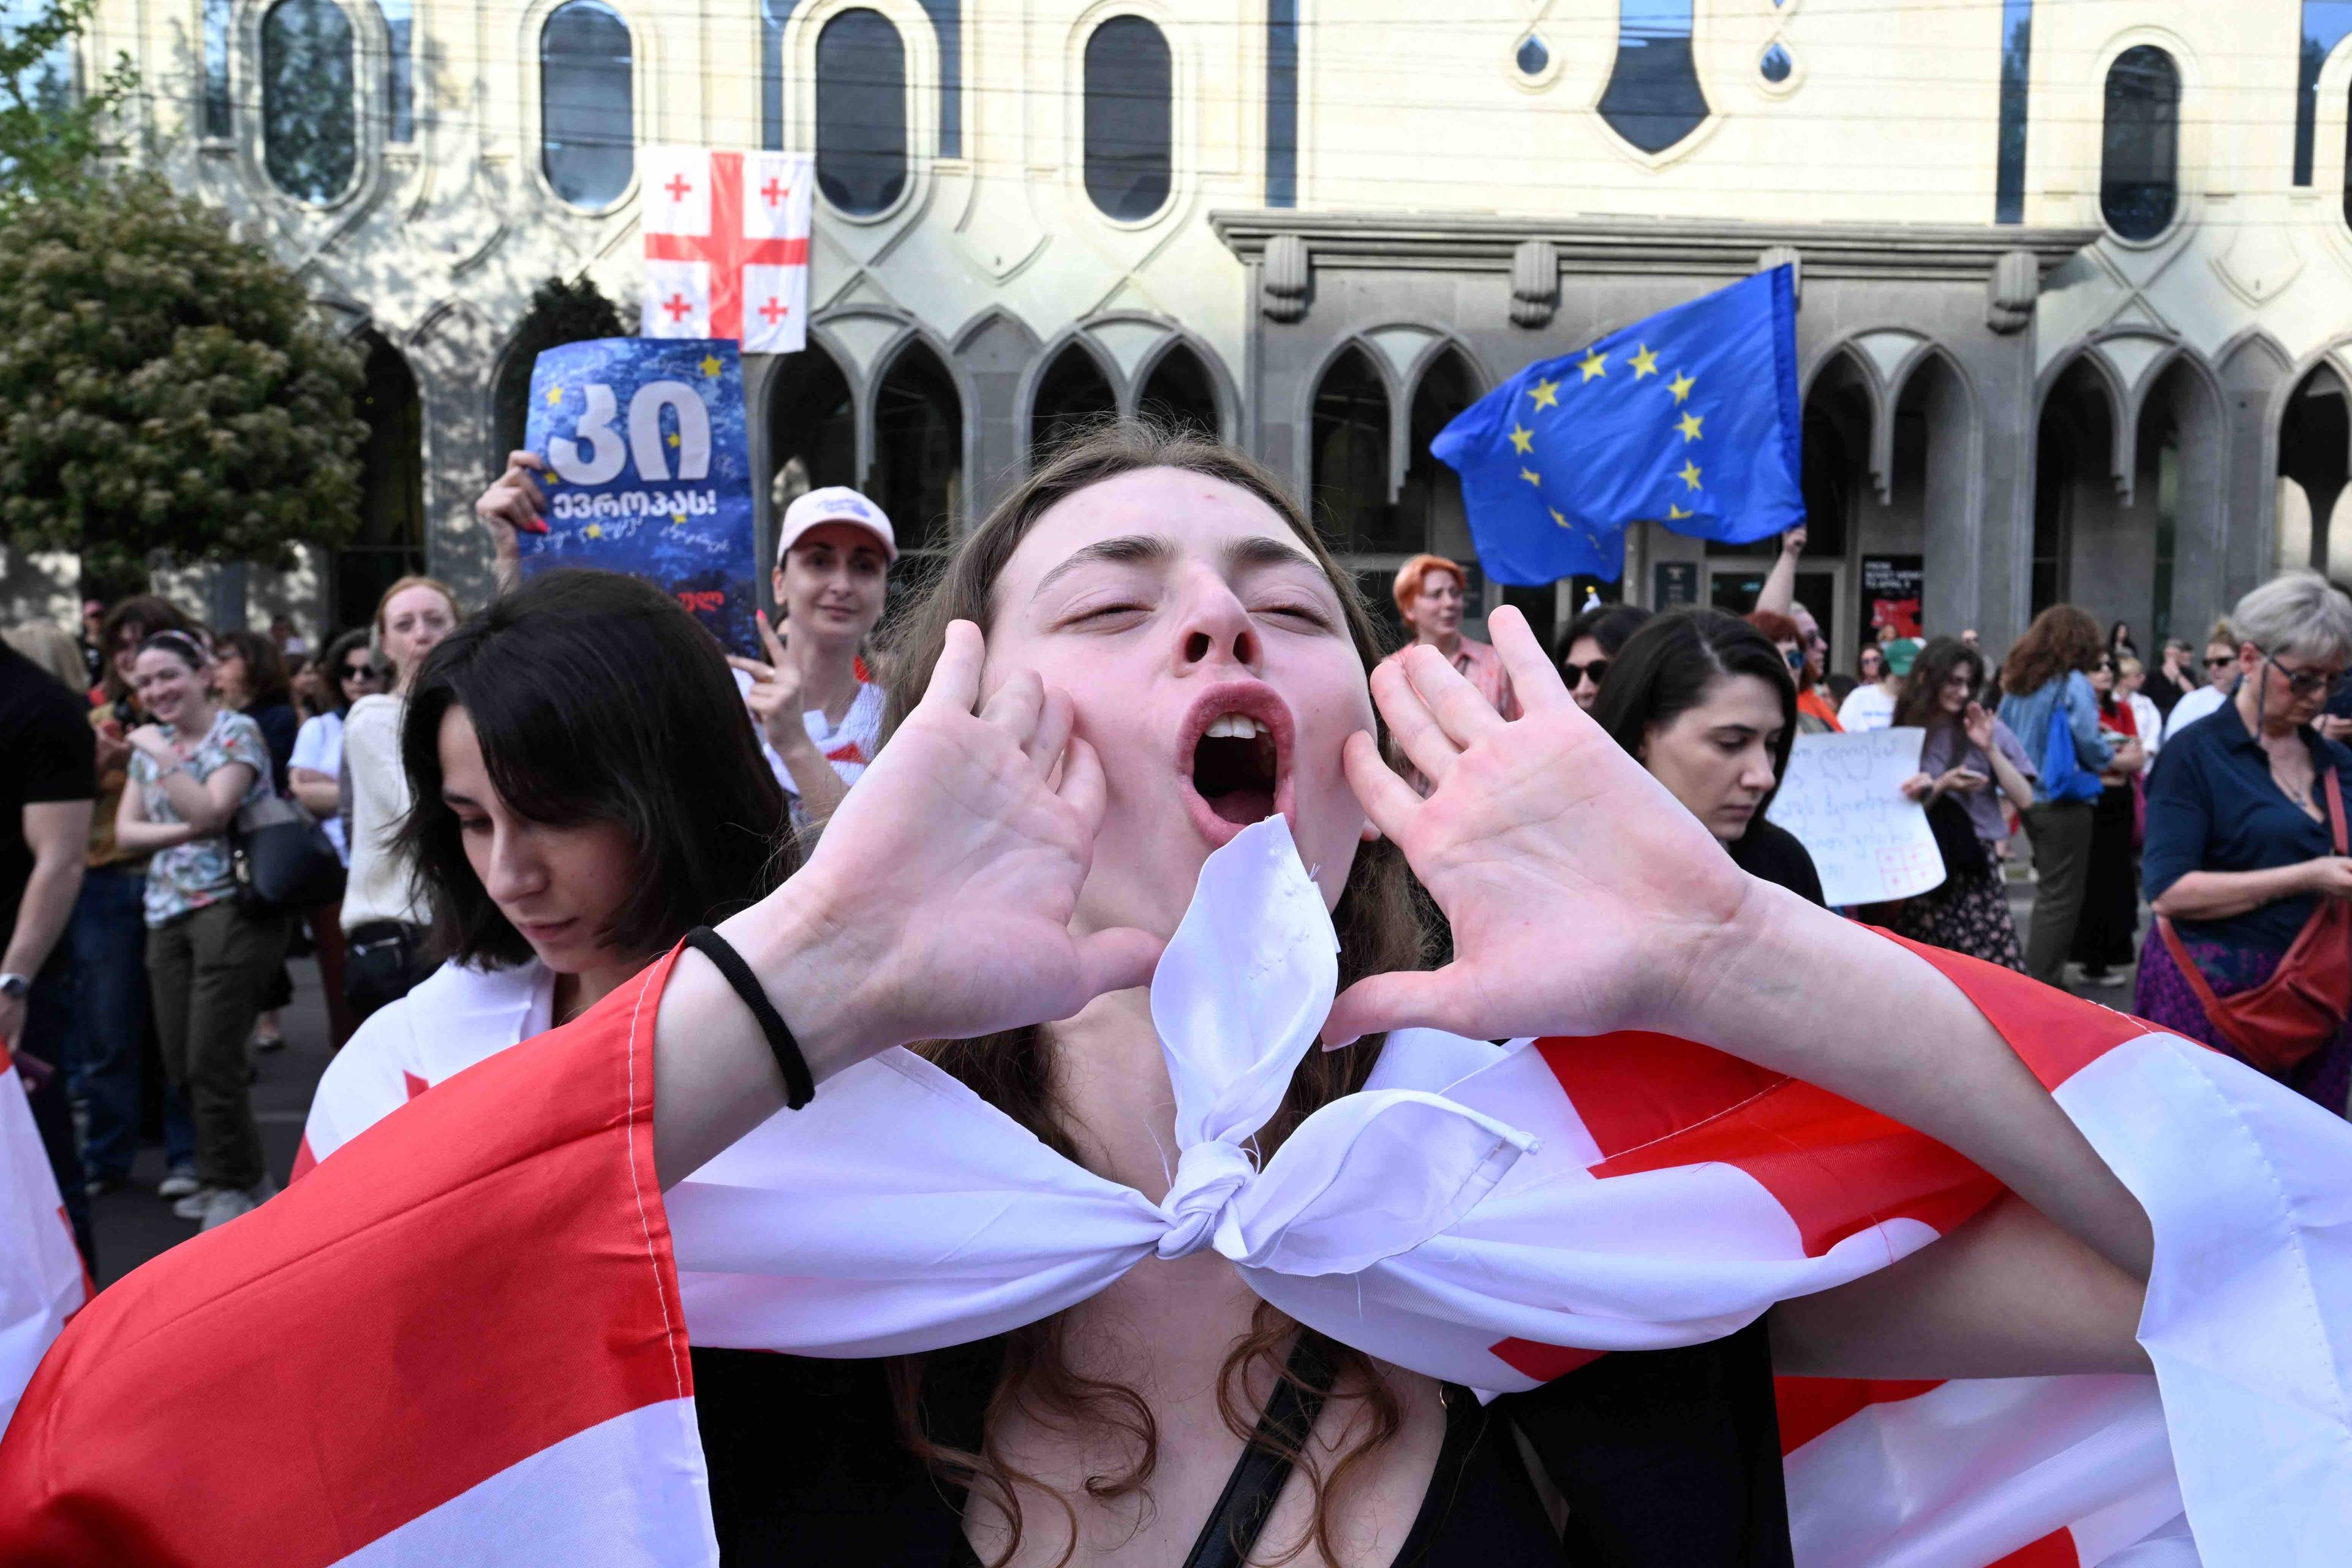 Uczestniczka demonstracji krzyczy, przykładając dłonie do ust, na ramionach ma gruzińską flagę narodową, w tle inni demonstranci z flagami gruzińskimi i UE. Gruzja